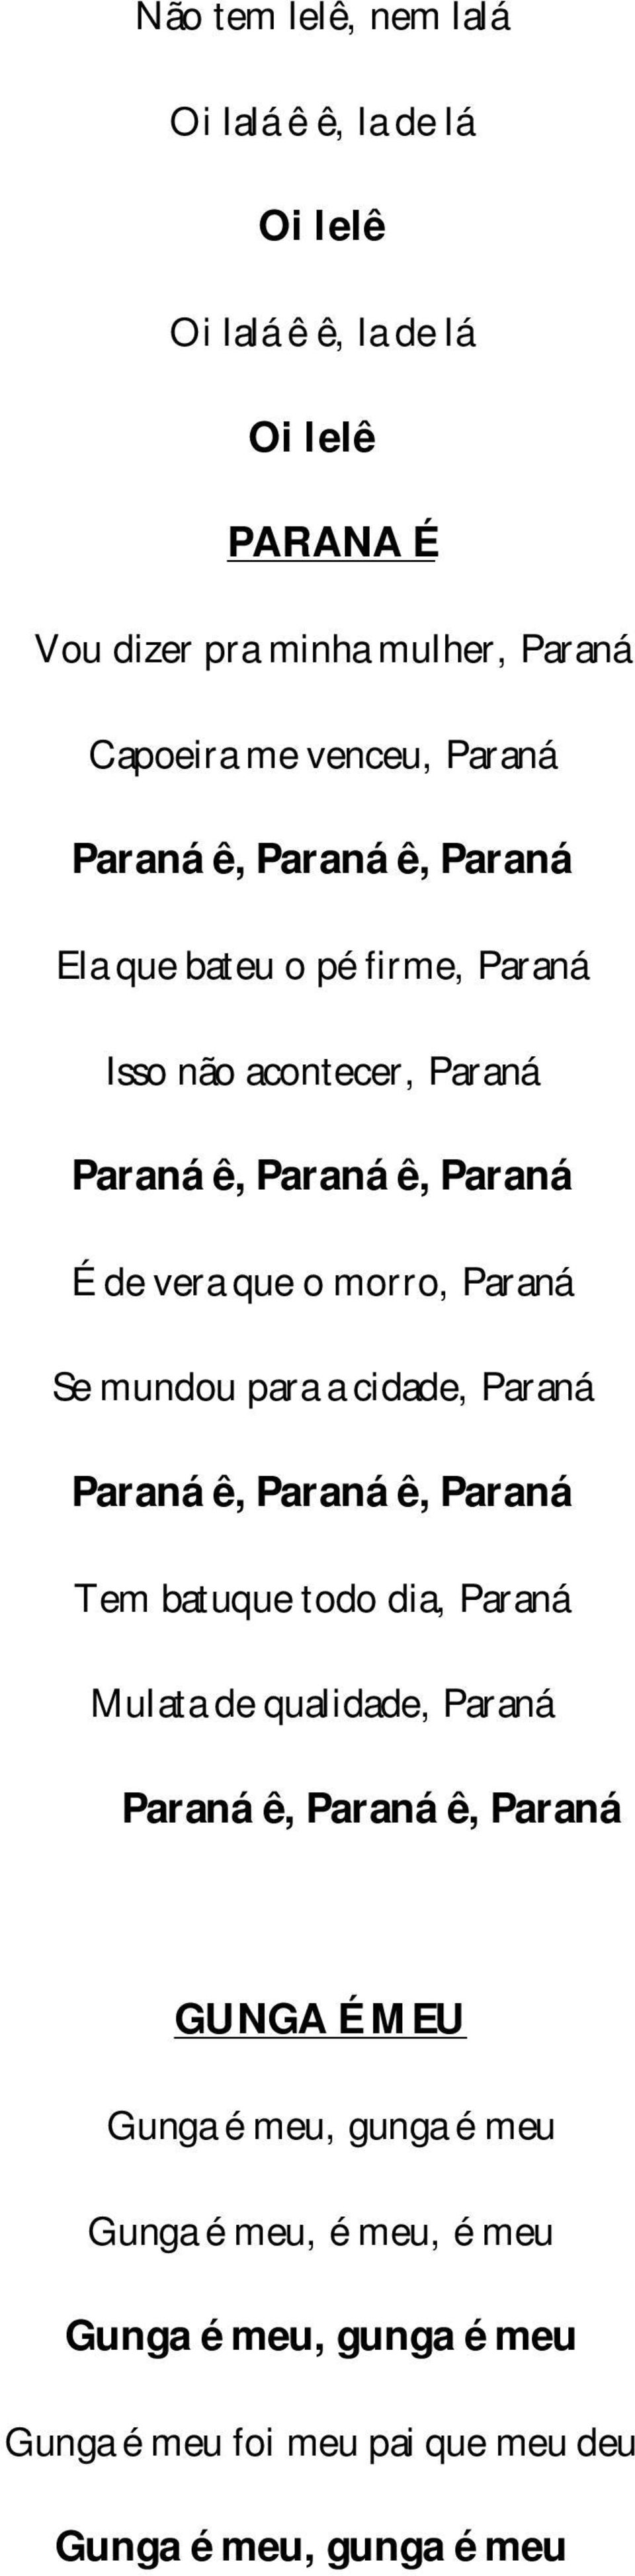 Paraná Se mundou para a cidade, Paraná Paraná ê, Paraná ê, Paraná Tem batuque todo dia, Paraná Mulata de qualidade, Paraná Paraná ê, Paraná ê,